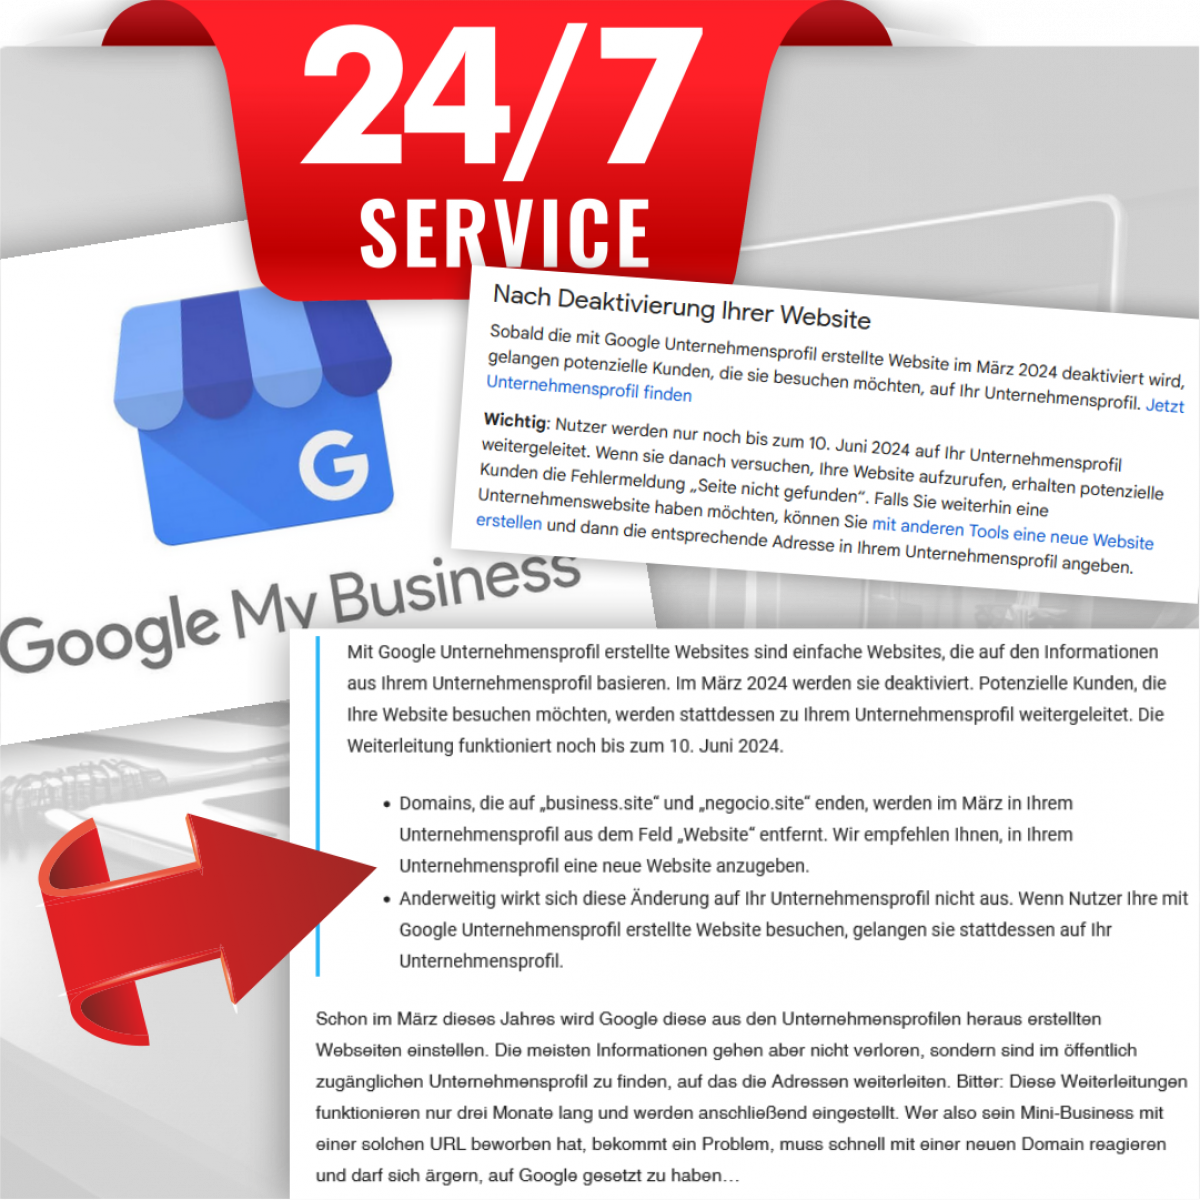 Wichtige Mitteilung für Google Business Site Nutzer: Kostenlose Dienste werden eingestellt!